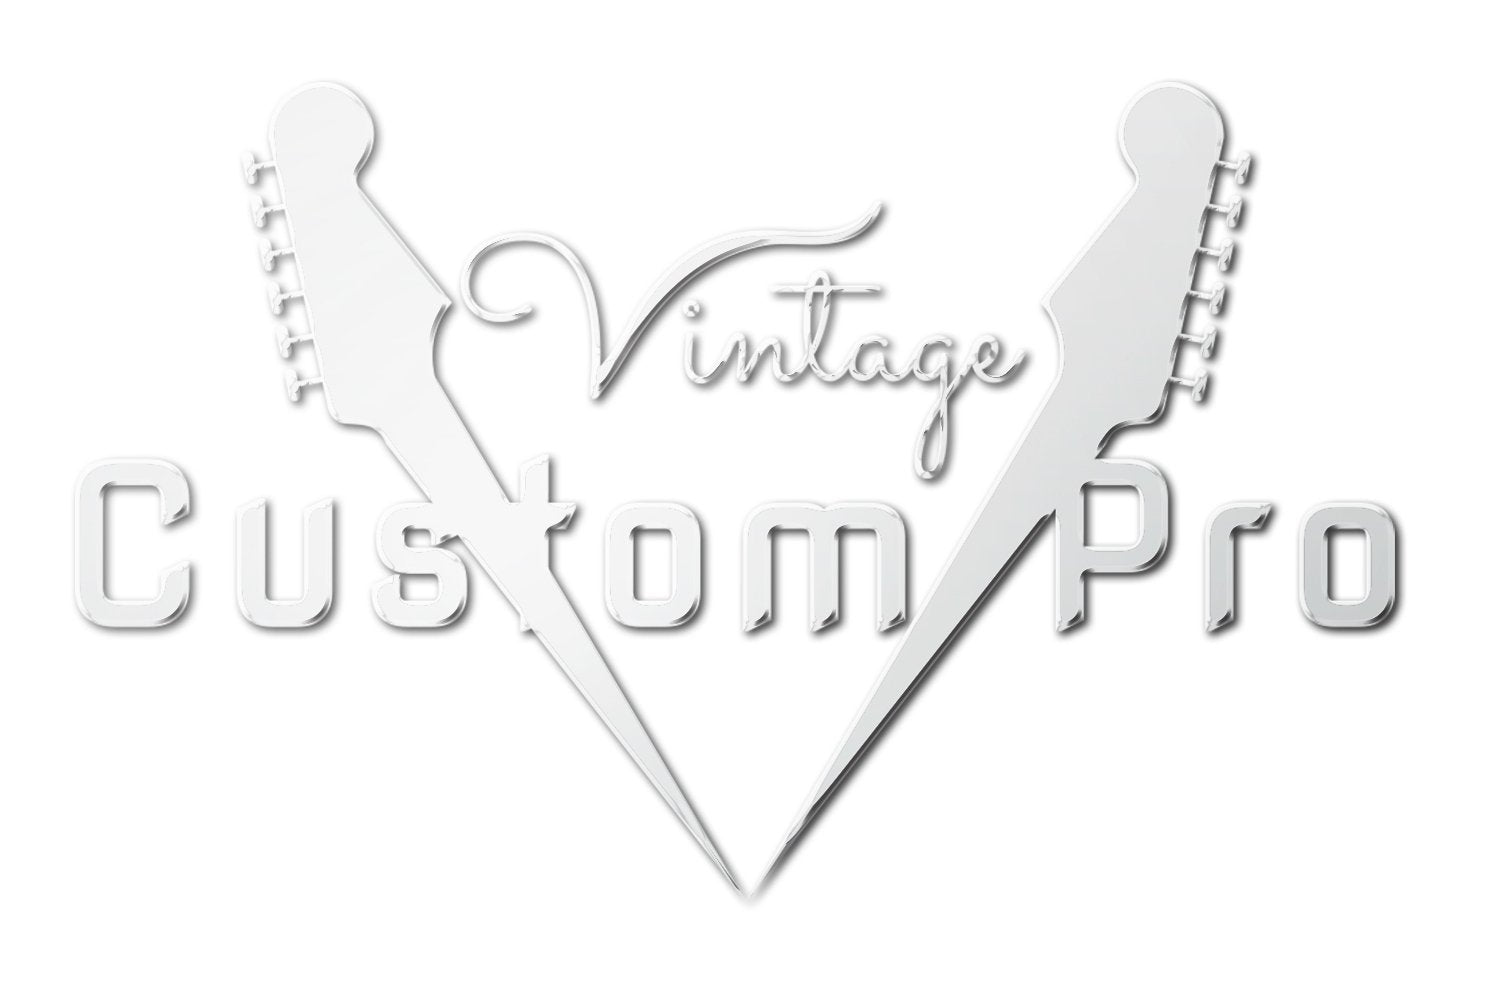 Vintage* V100PGM Electric Guitar, Electric Guitar for sale at Richards Guitars.